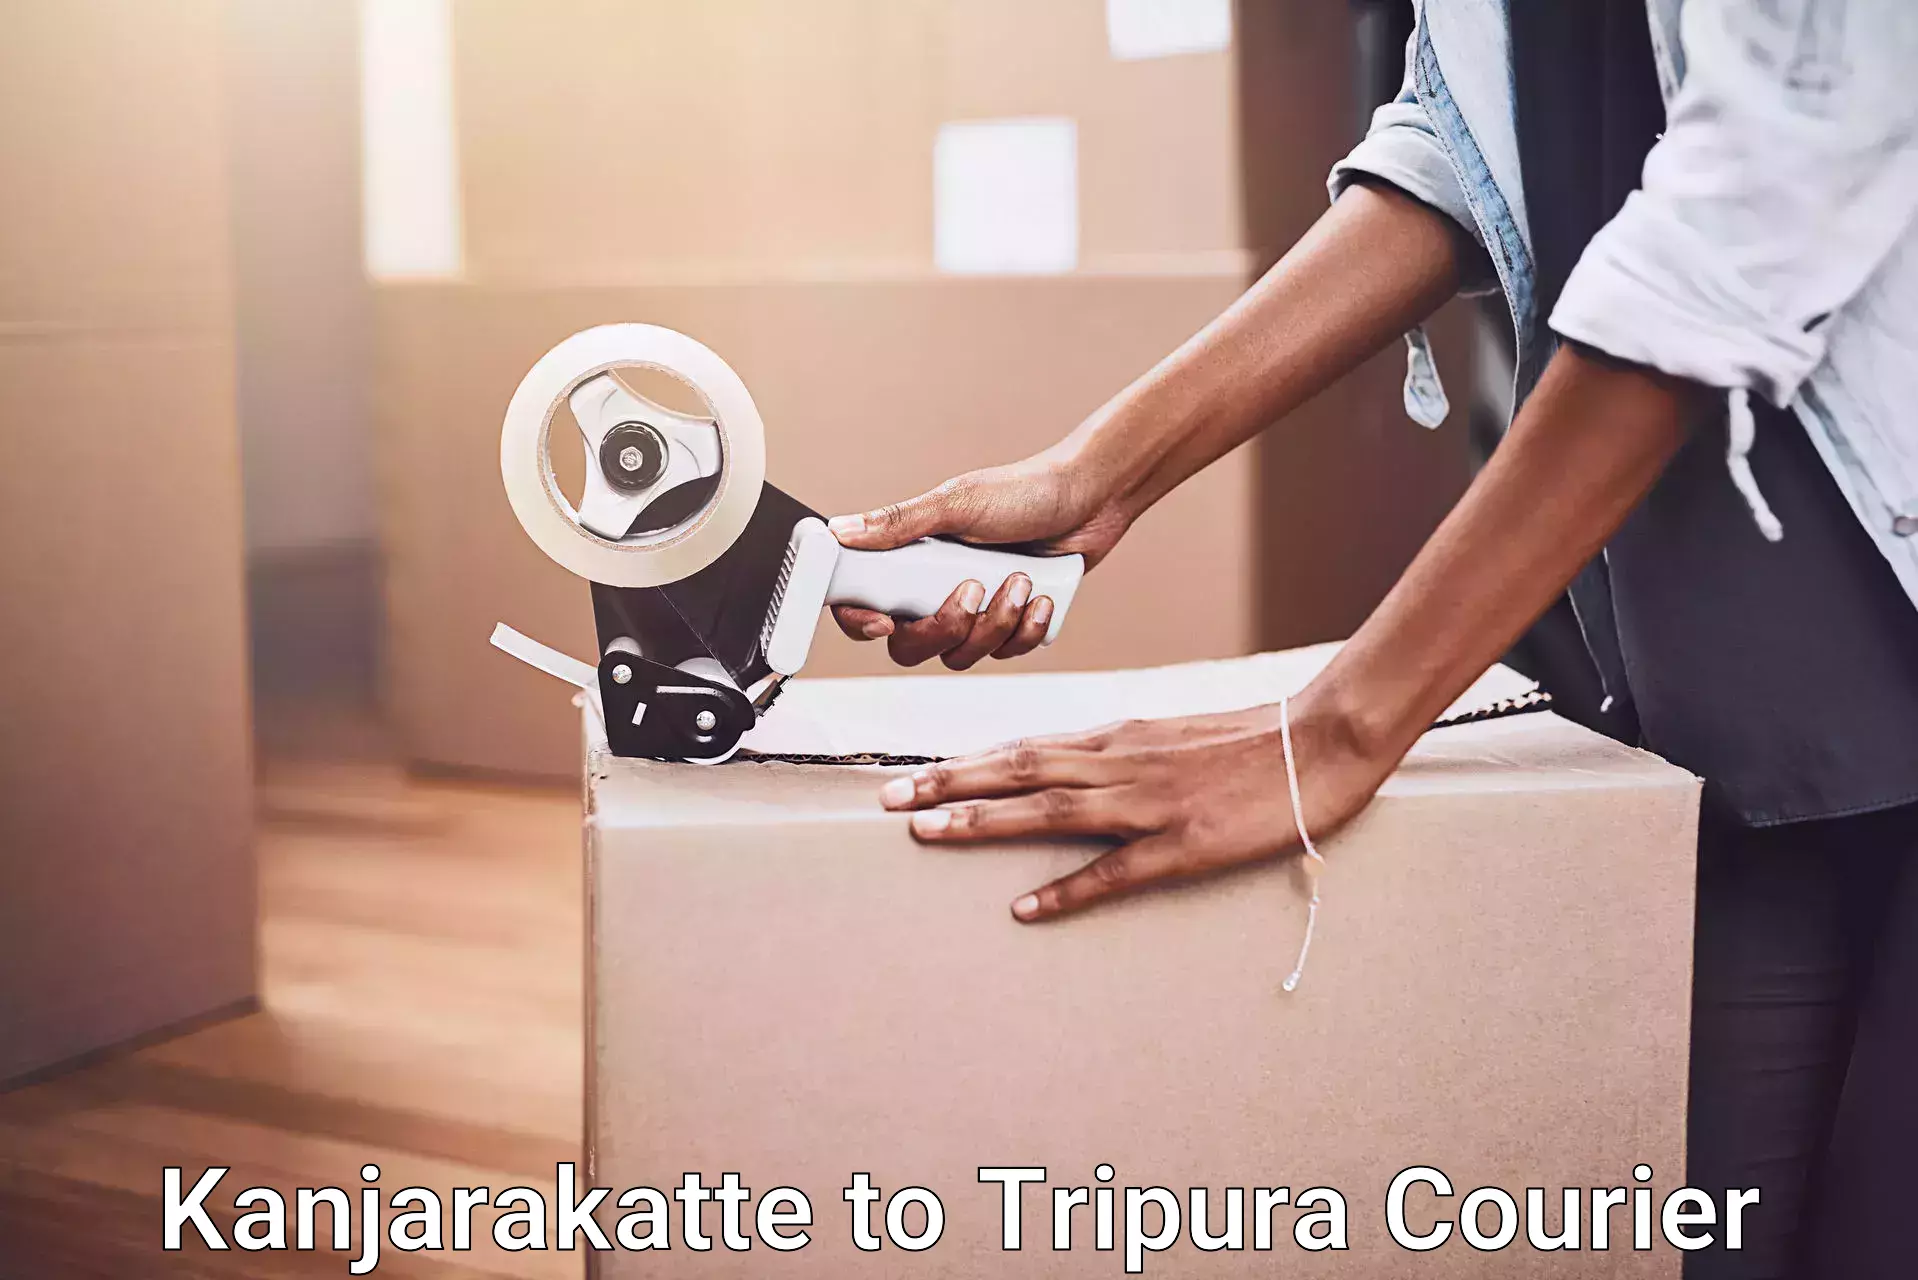 Professional packing and transport Kanjarakatte to Udaipur Tripura